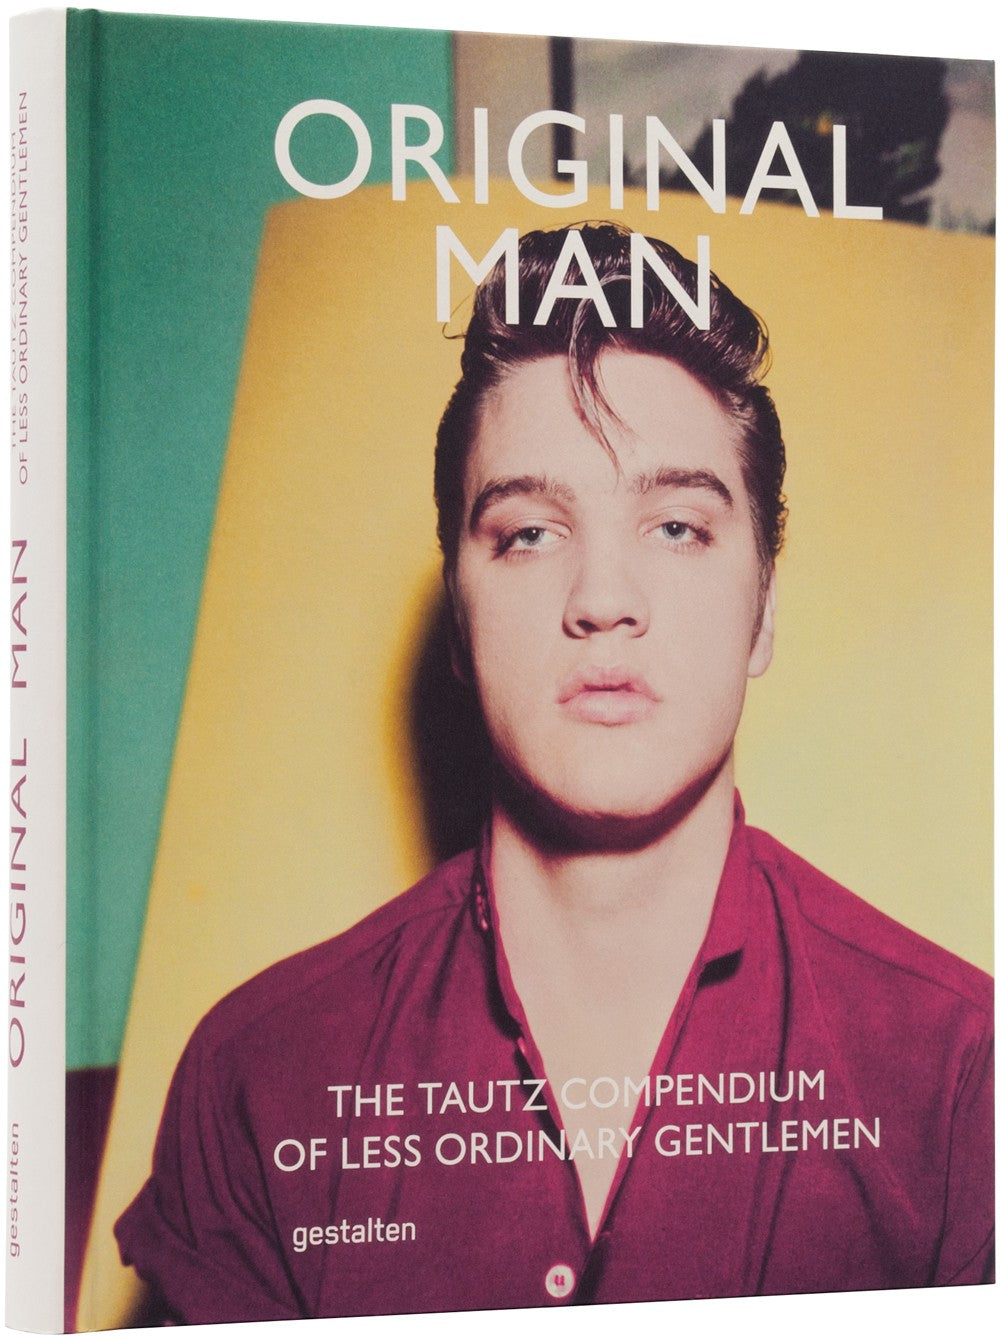 Book: ORIGINAL MAN - The Trautz Compendium of Less Ordinary Gentlemen